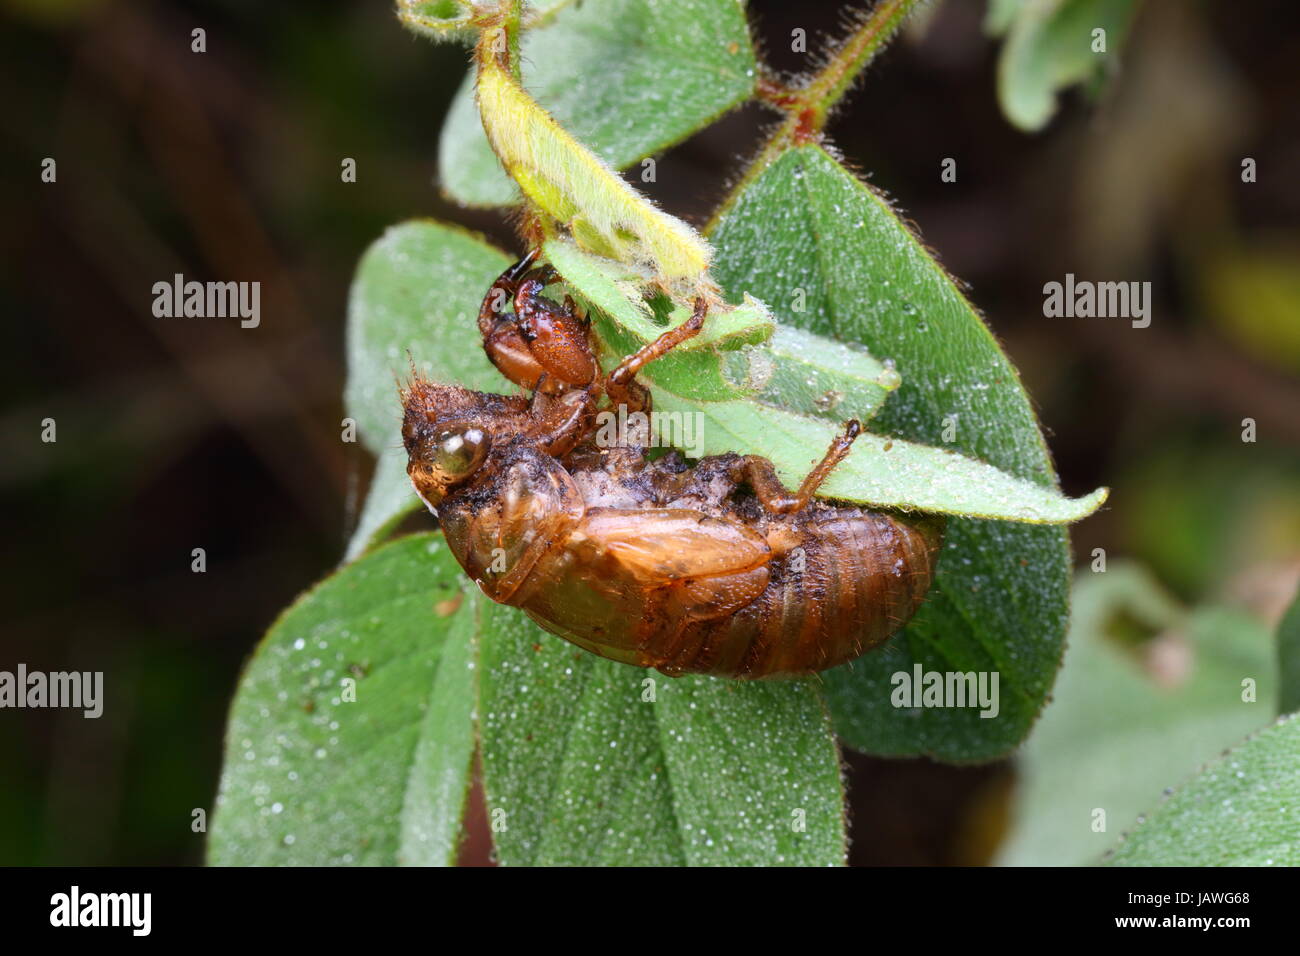 A large cicada exoskeleton, Neotibicen resonans, after emergence. Stock Photo